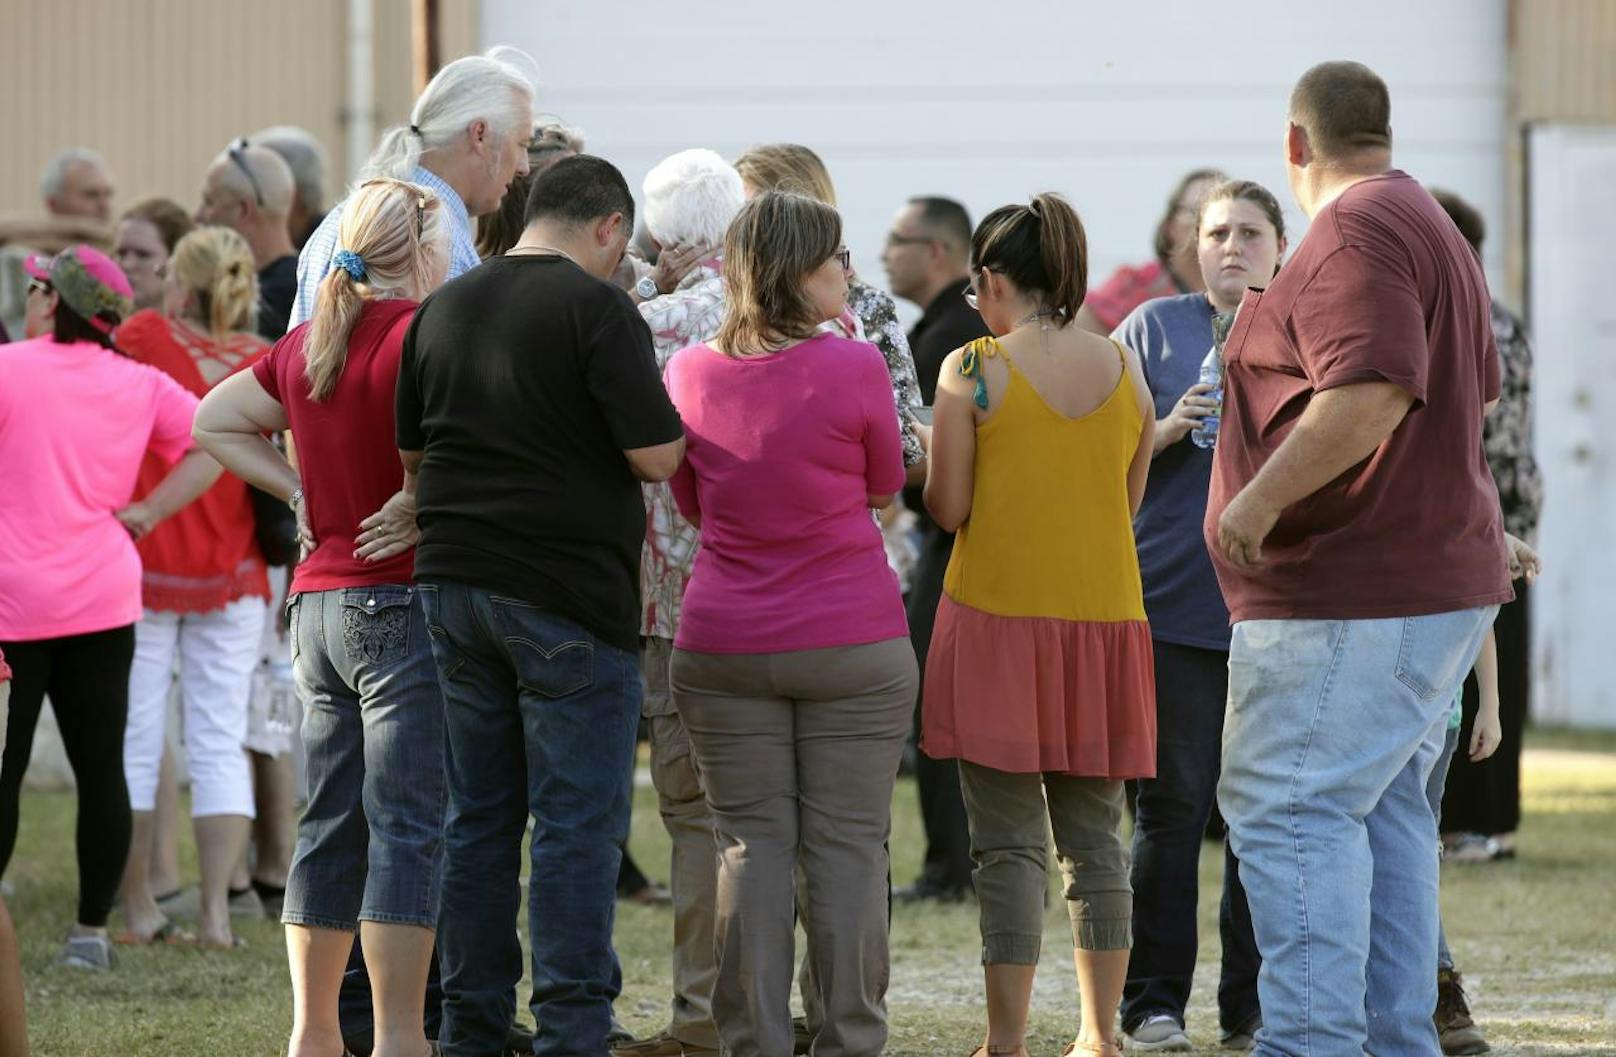 Ein ehemaliger Airforce-Angehöriger hat in einer Kirche in Texas ein Blutbad angerichtet und 26 Menschen ermordet, darunter auch Kinder.
